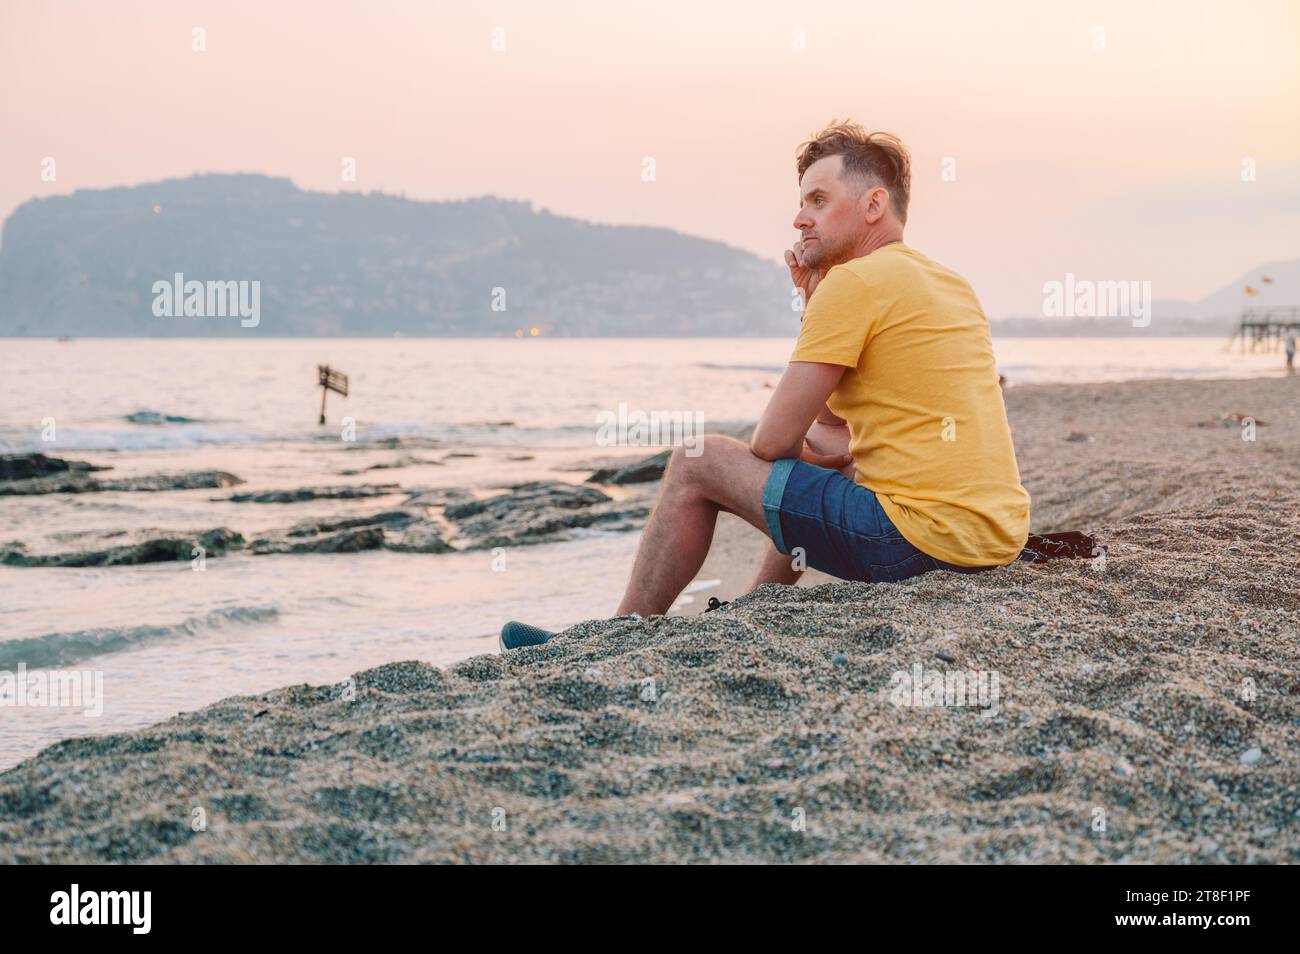 Der Mann sitzt am Strand und blickt auf das Meer in Alanya City, Türkei. Reise- oder Urlaubskonzept Stockfoto